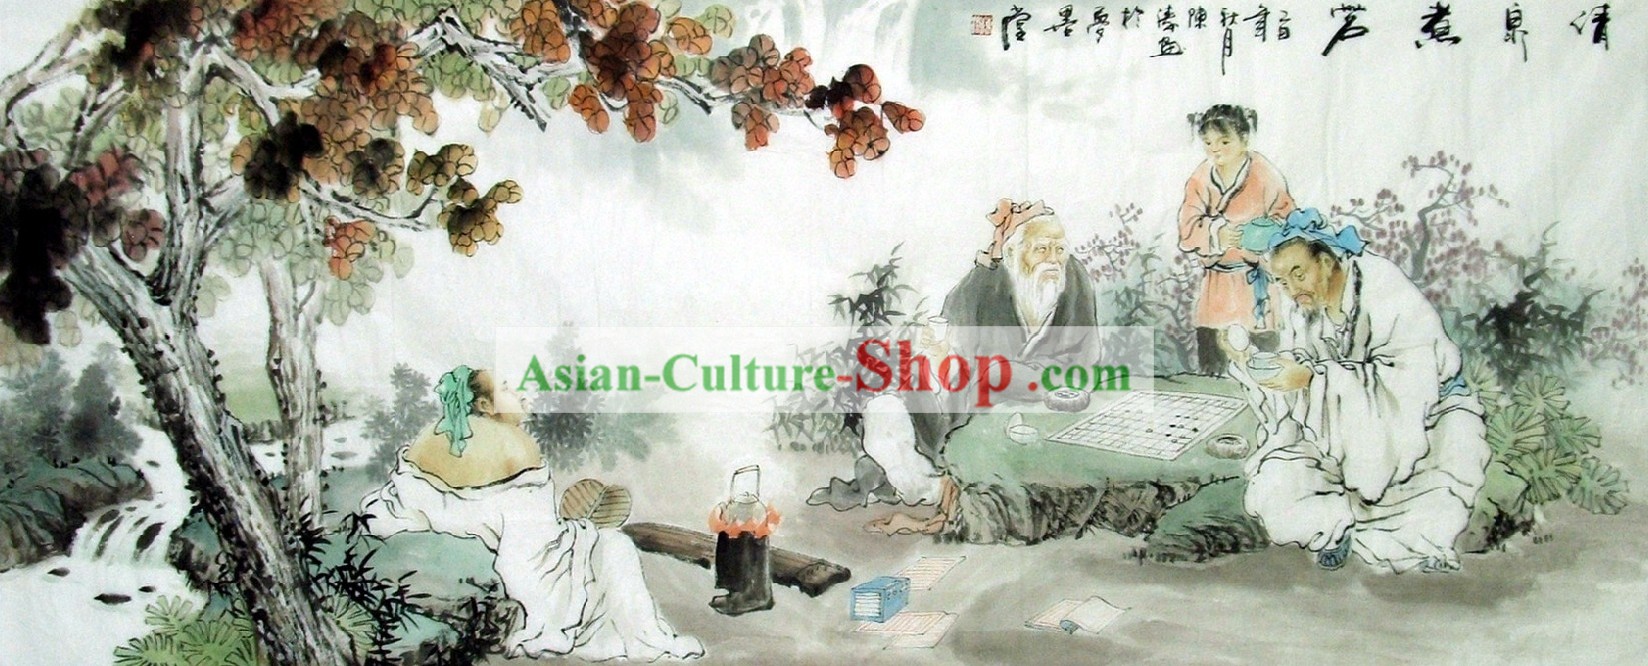 La peinture traditionnelle chinoise par Chen Figurine Tao